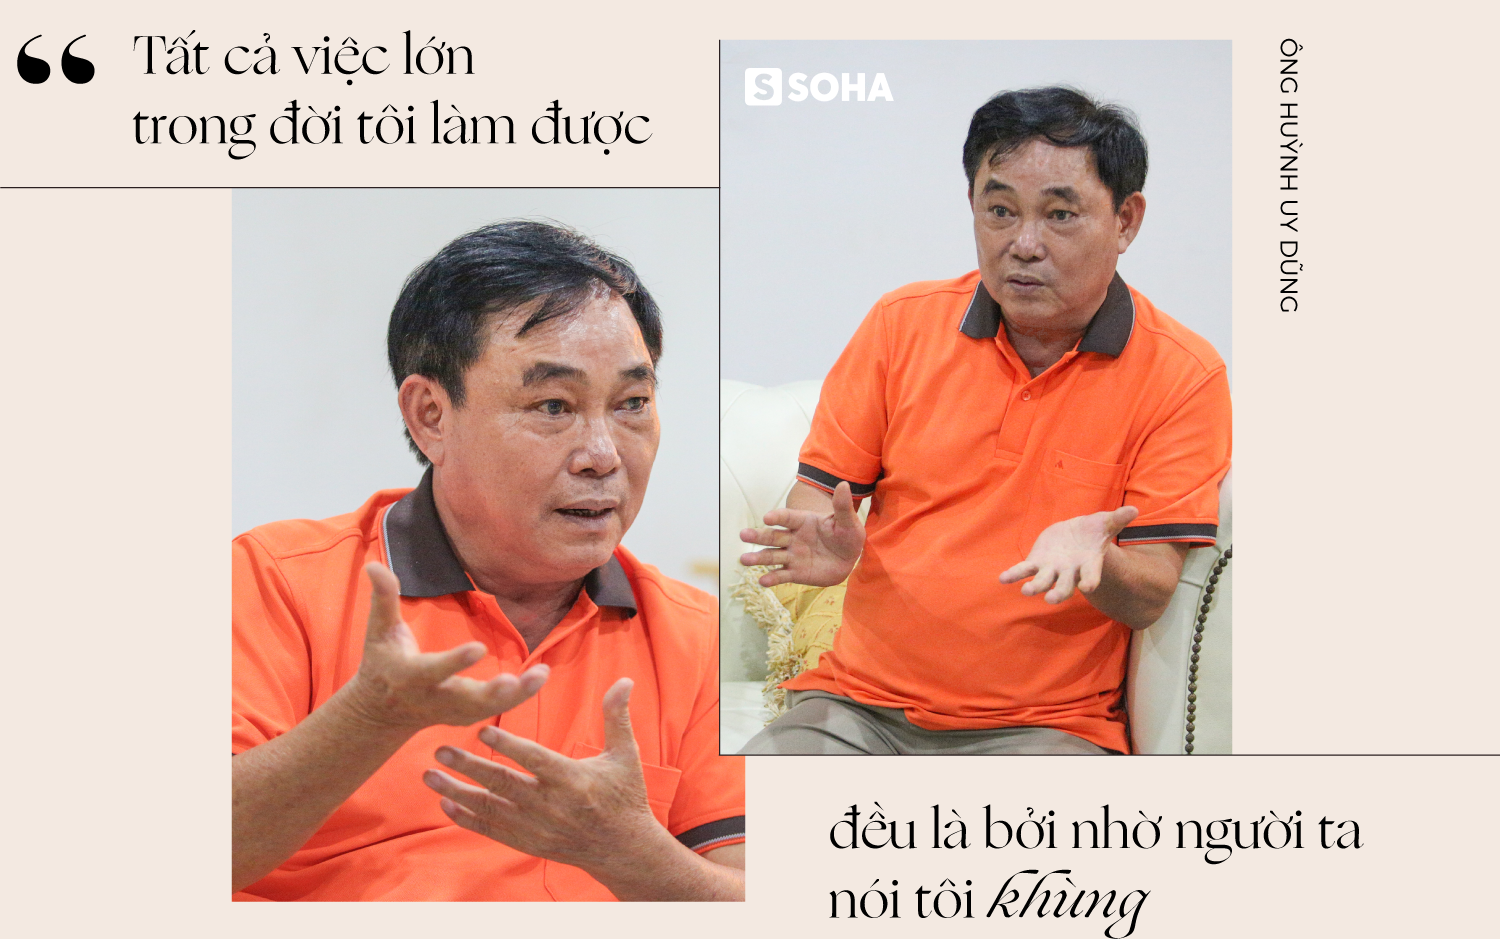 Ông Huỳnh Uy Dũng: “Sống được 30 năm nữa, mỗi năm tôi sẽ bán đi một vài tài sản, chia hết cho đời” - Ảnh 3.